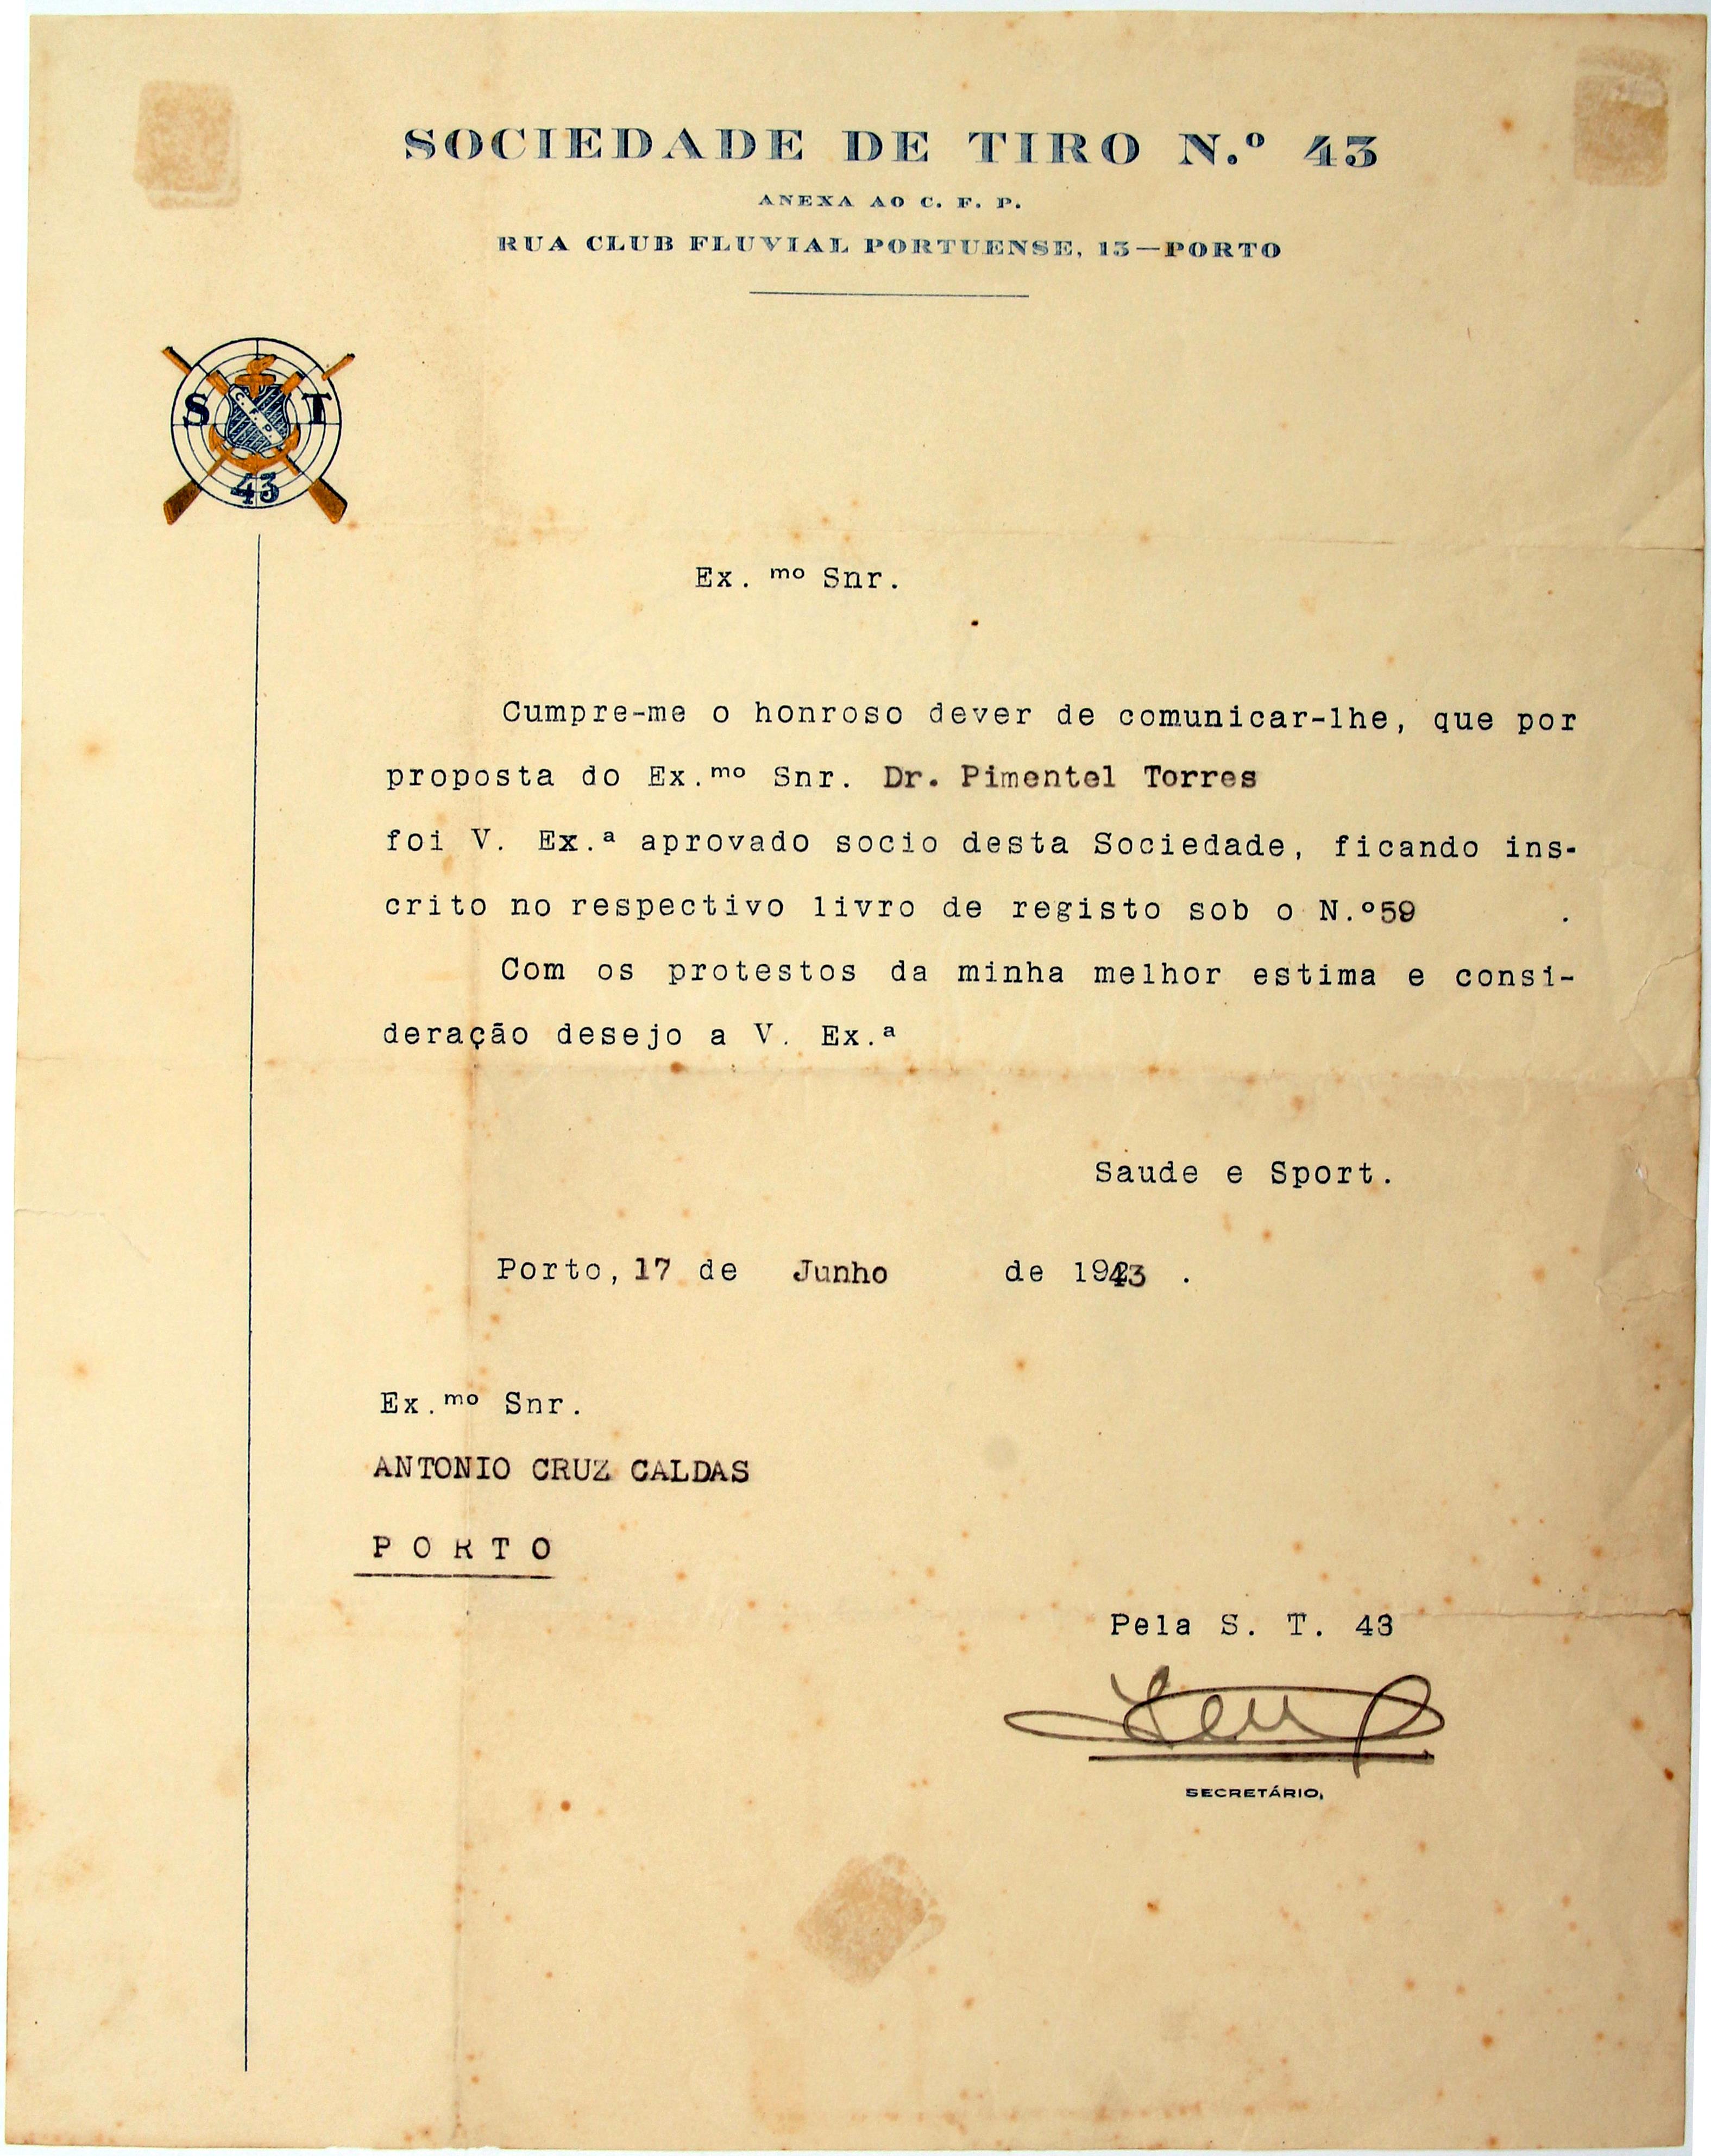 Cruz Caldas (2) : 1928-1946 : [carta da Sociedade de Tiro N.º 43 enviada a Cruz Caldas]